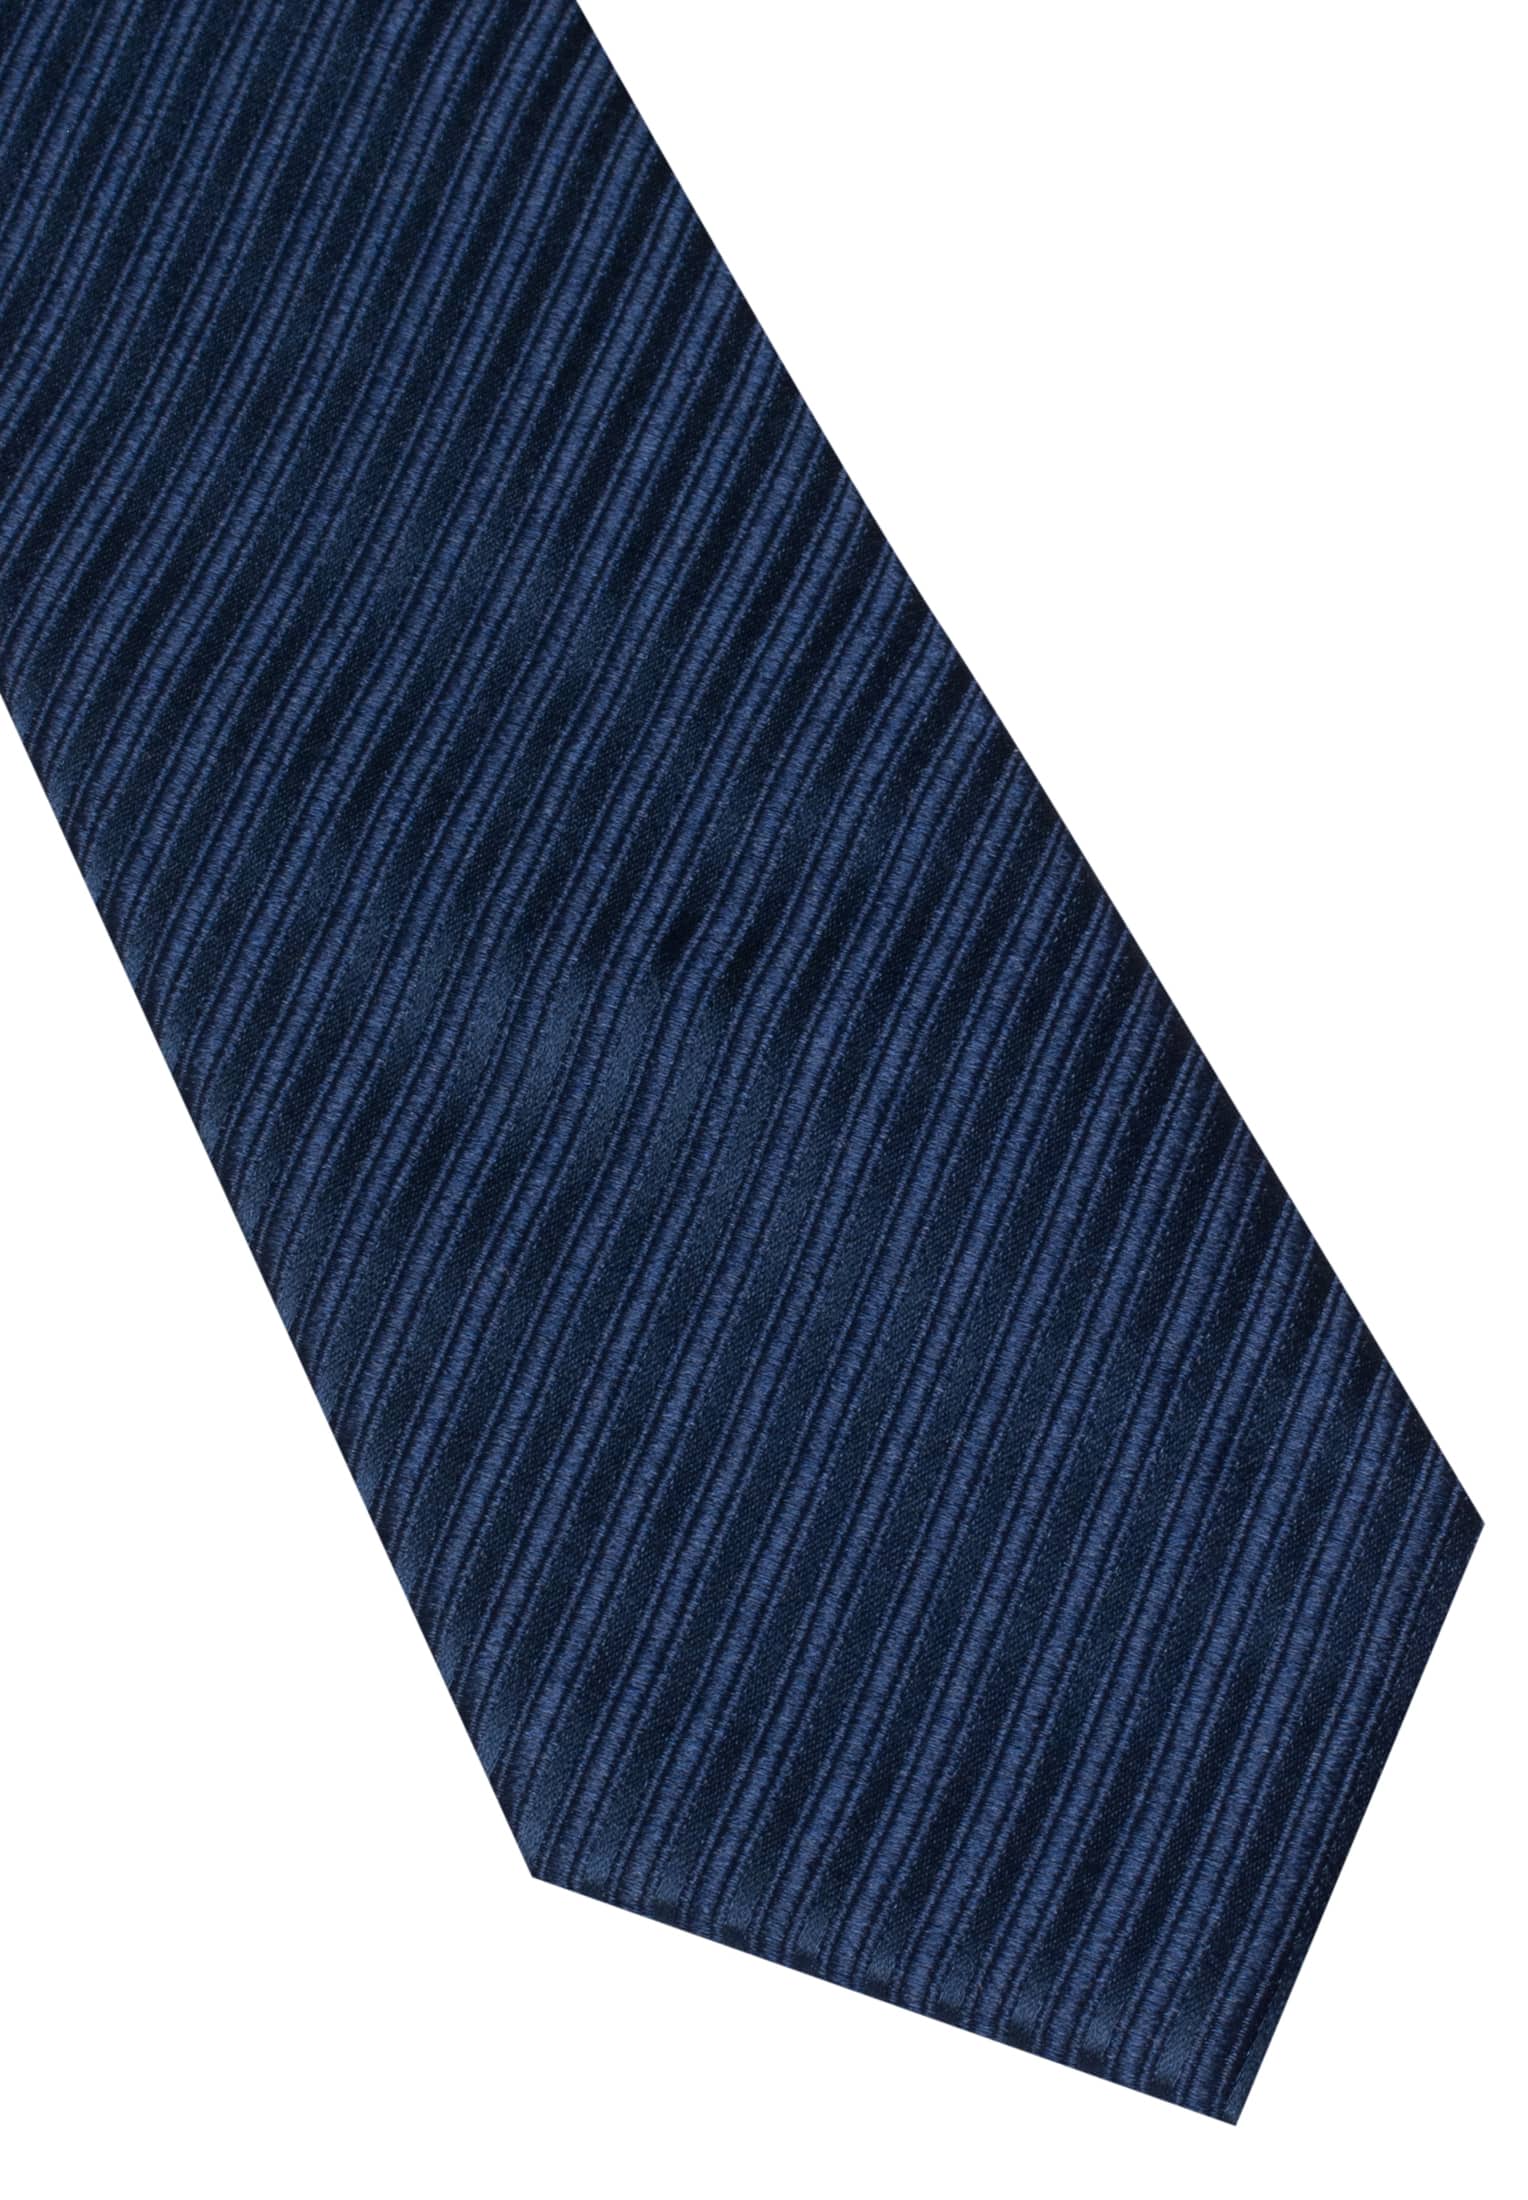 Tie in navy plain